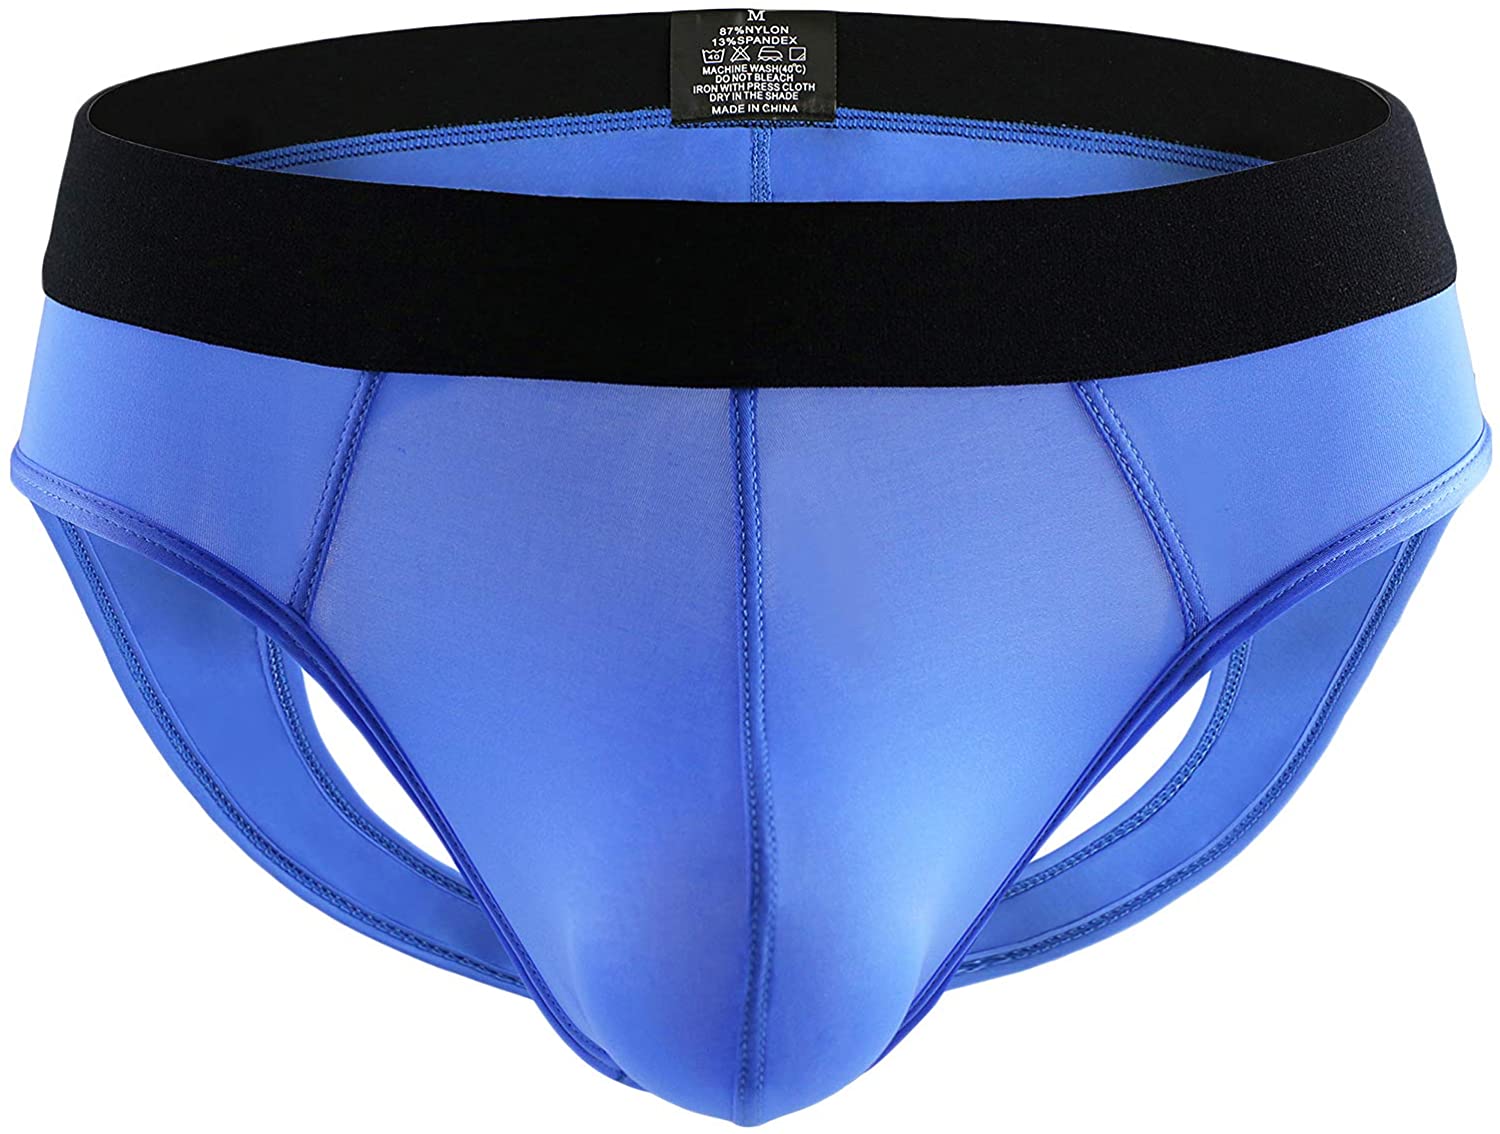 YuKaiChen Men's Jockstrap Athletic Supporter Underwear Briefs Low Rise ...